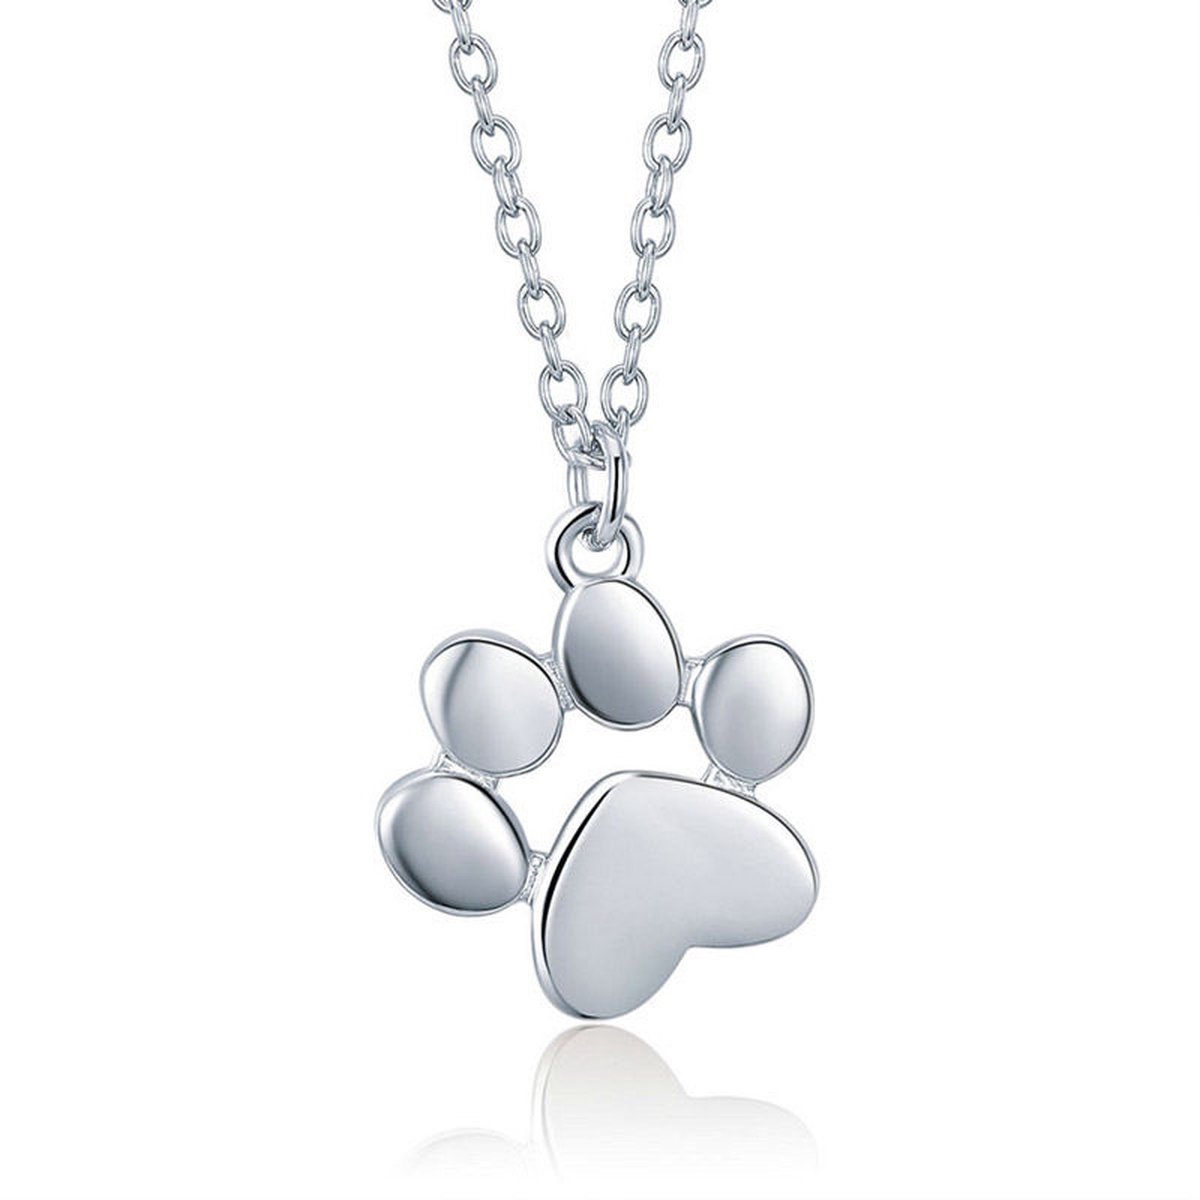 Lumici® | Dog Paw Necklace - Hondenpootje Ketting - Honden - Dieren - Buiten - Dog - Animal - Viervoeter - Beste Vriend - Lente - Zomer - Cadeau Voor Vrouwen - Moederdag Cadeau - Valentijn - Liefde - Verrassing - Zilver